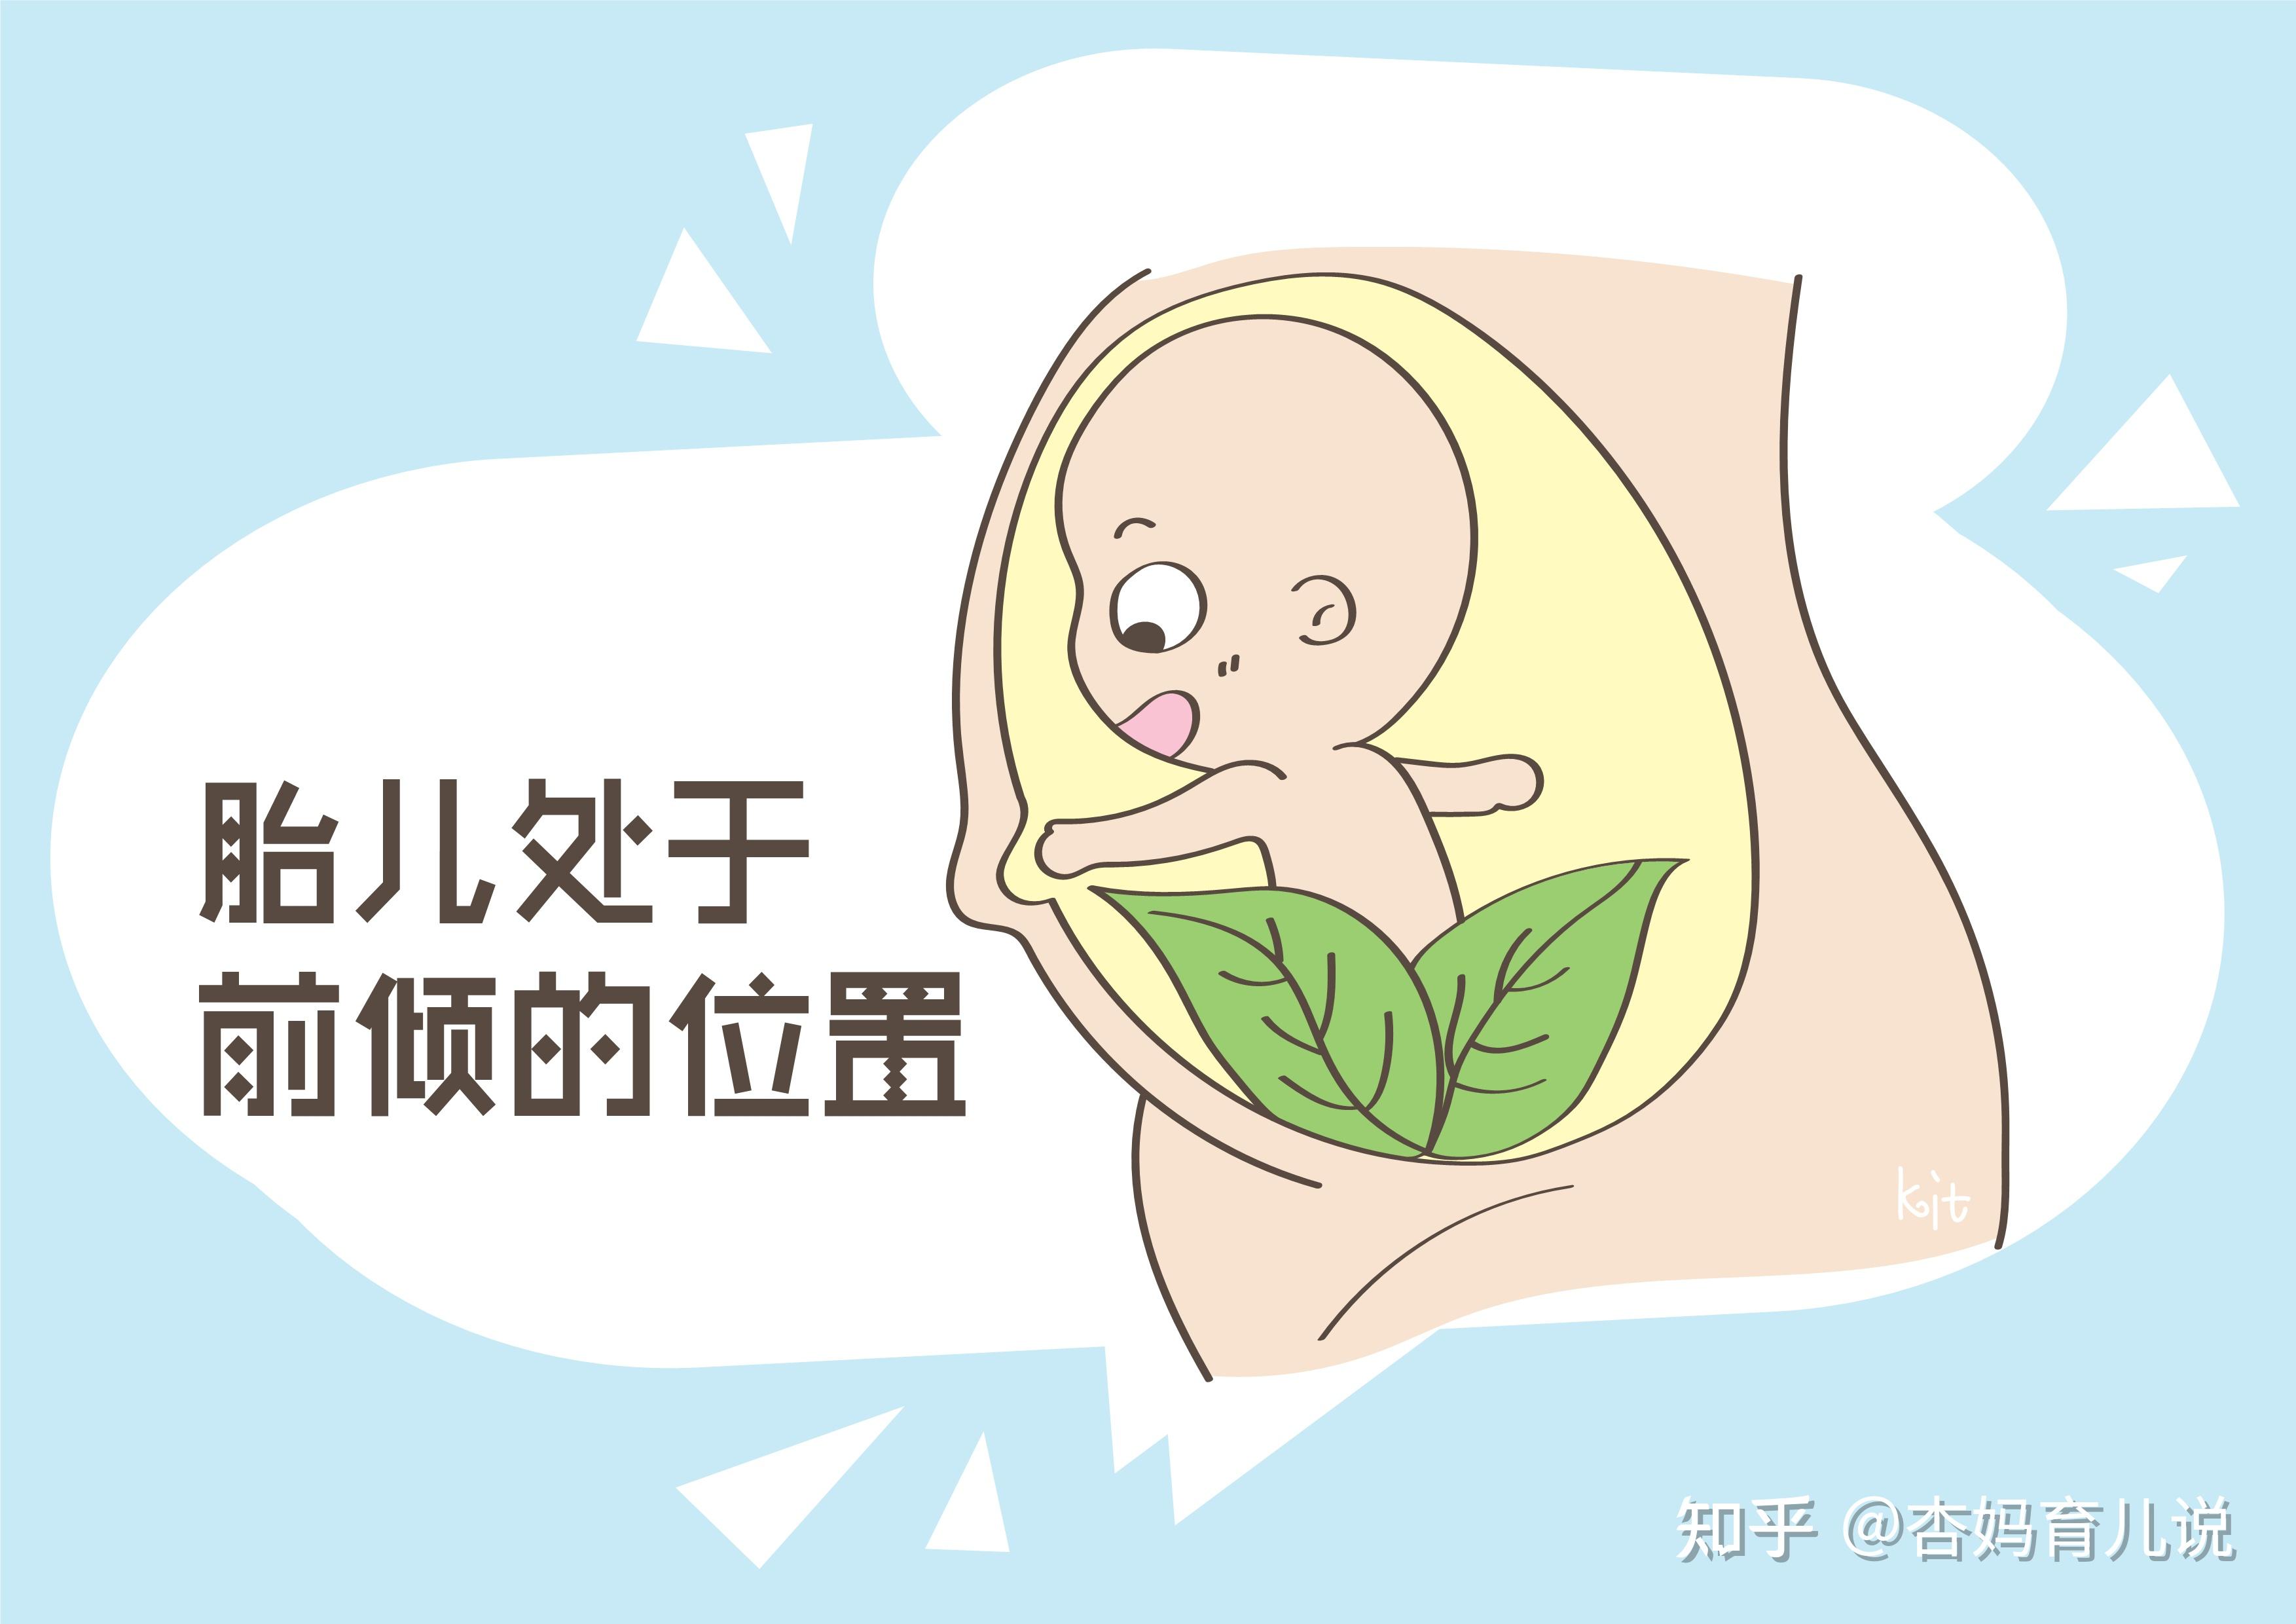 挽救脐膨出胎儿·多方上演“生命接力赛” - 健康见闻 - 新湖南